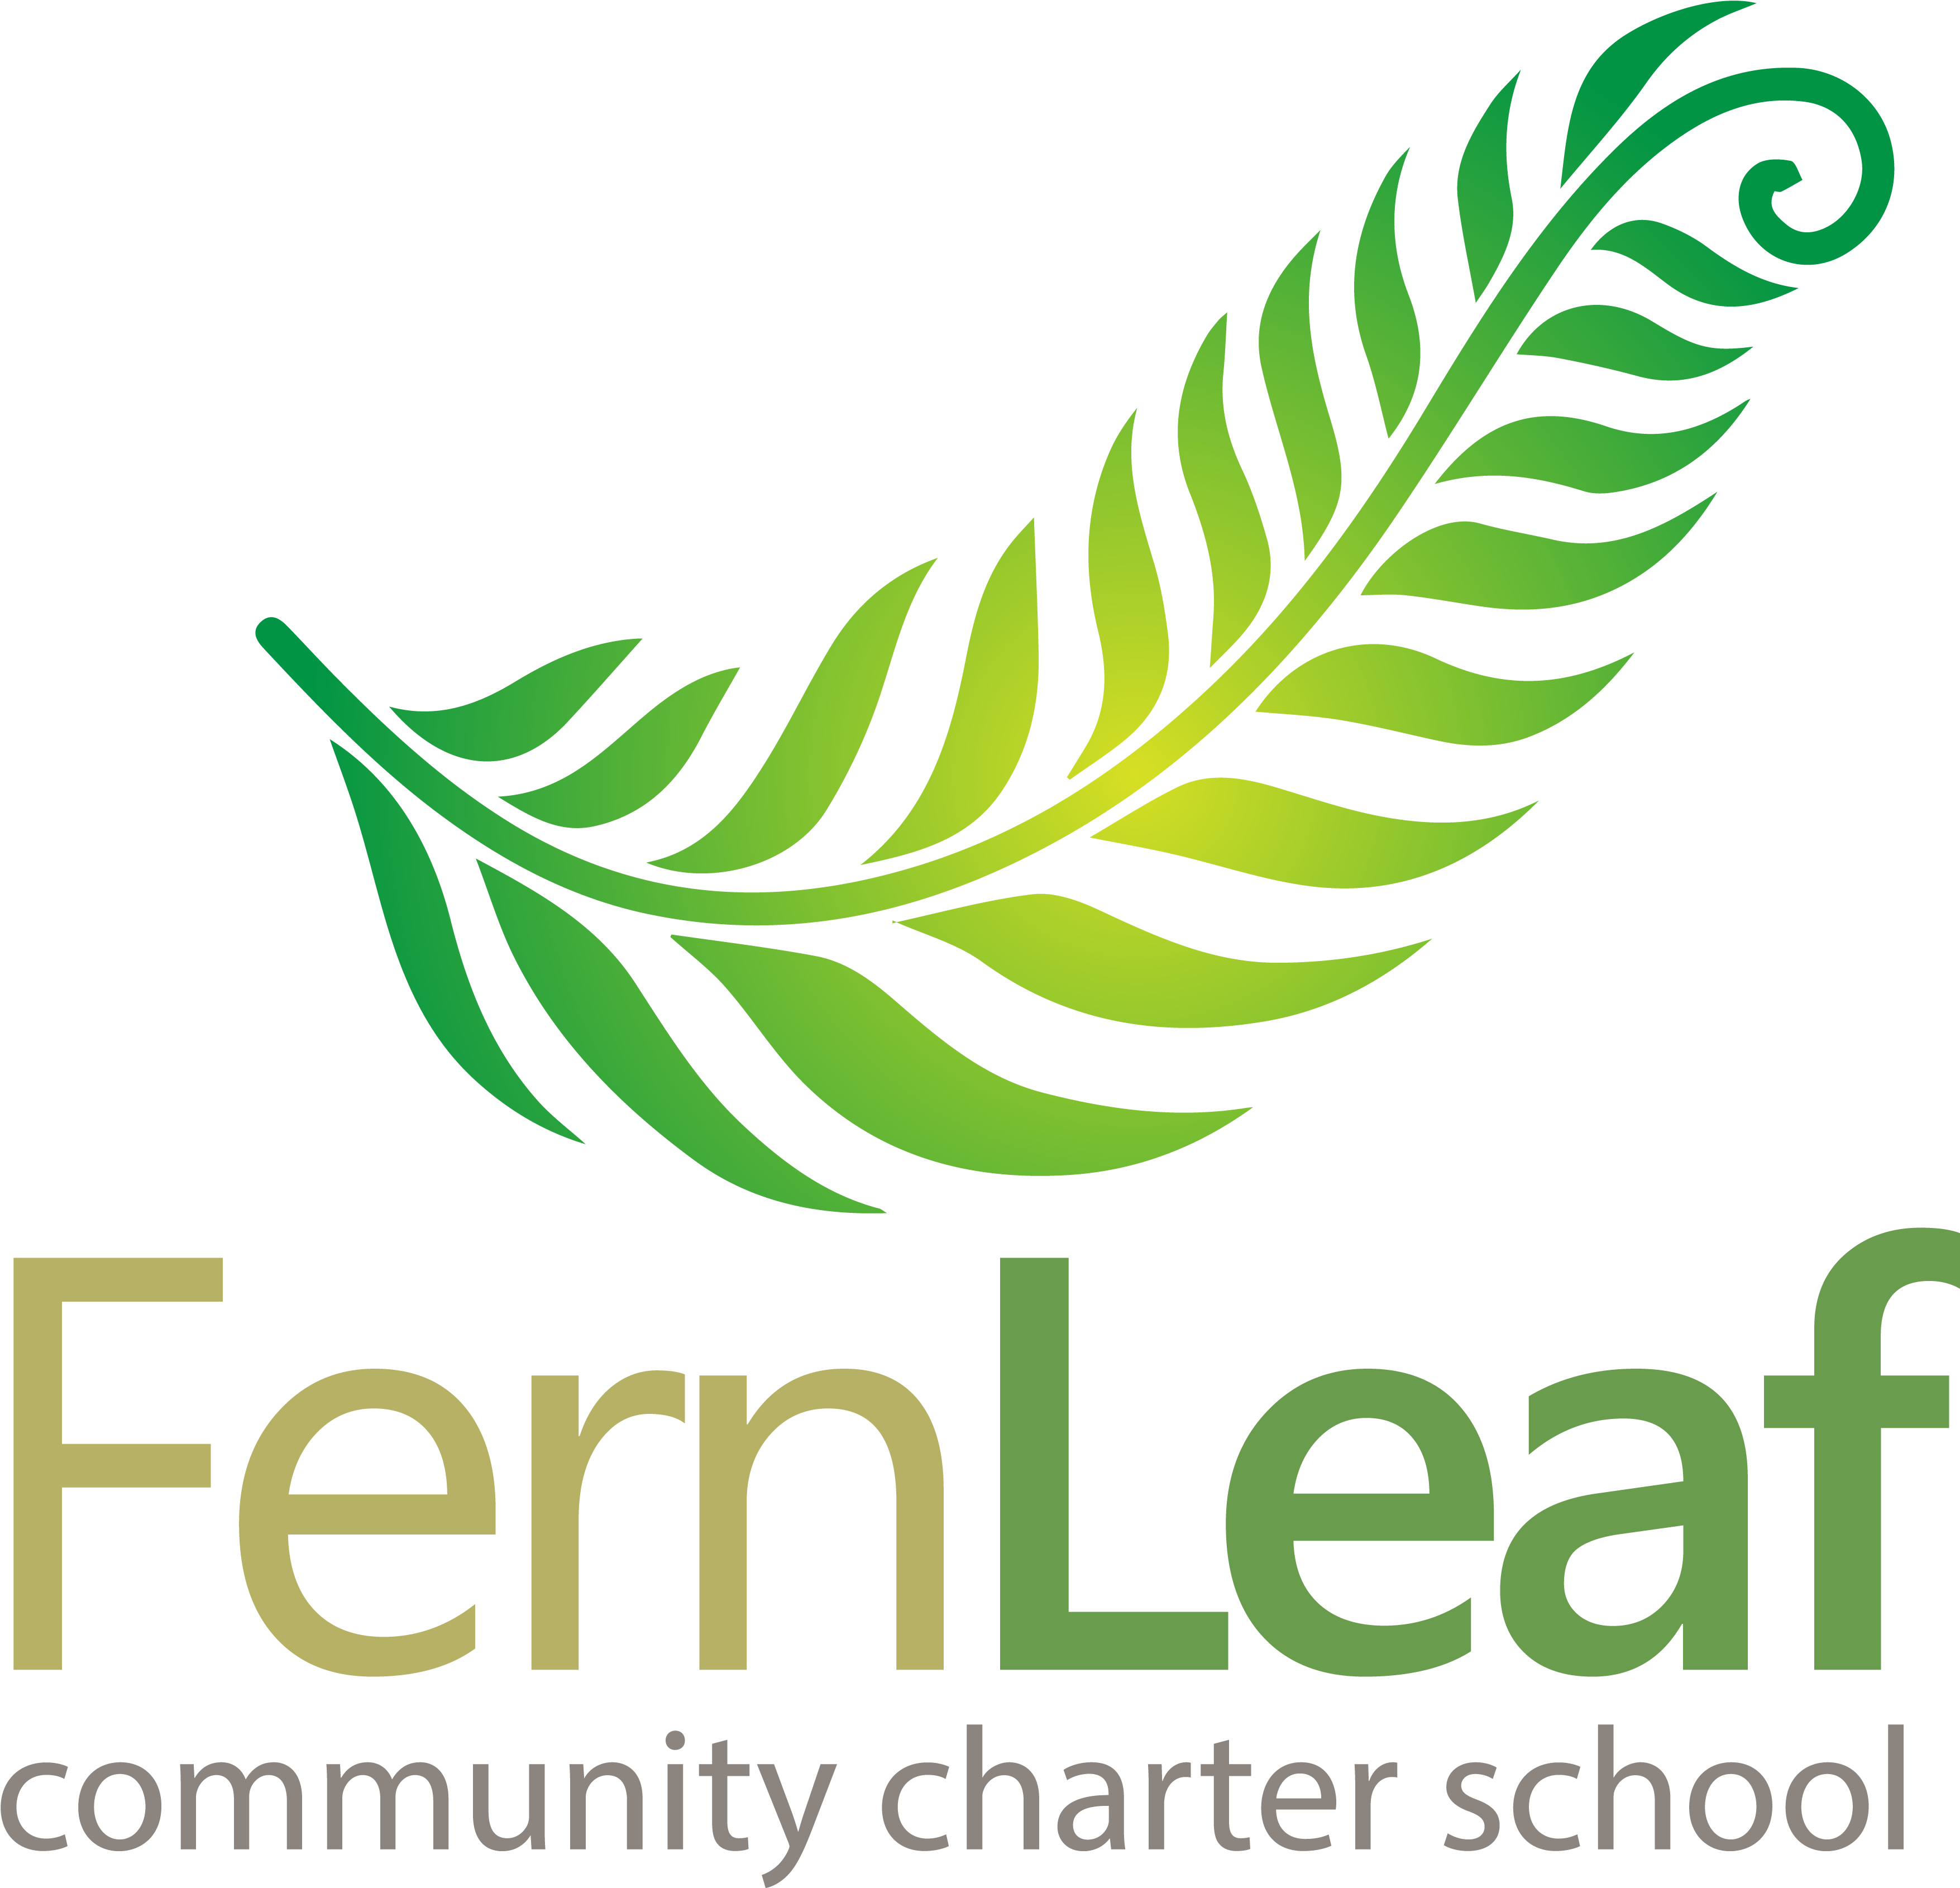 Fern Leaf (5600x5600)